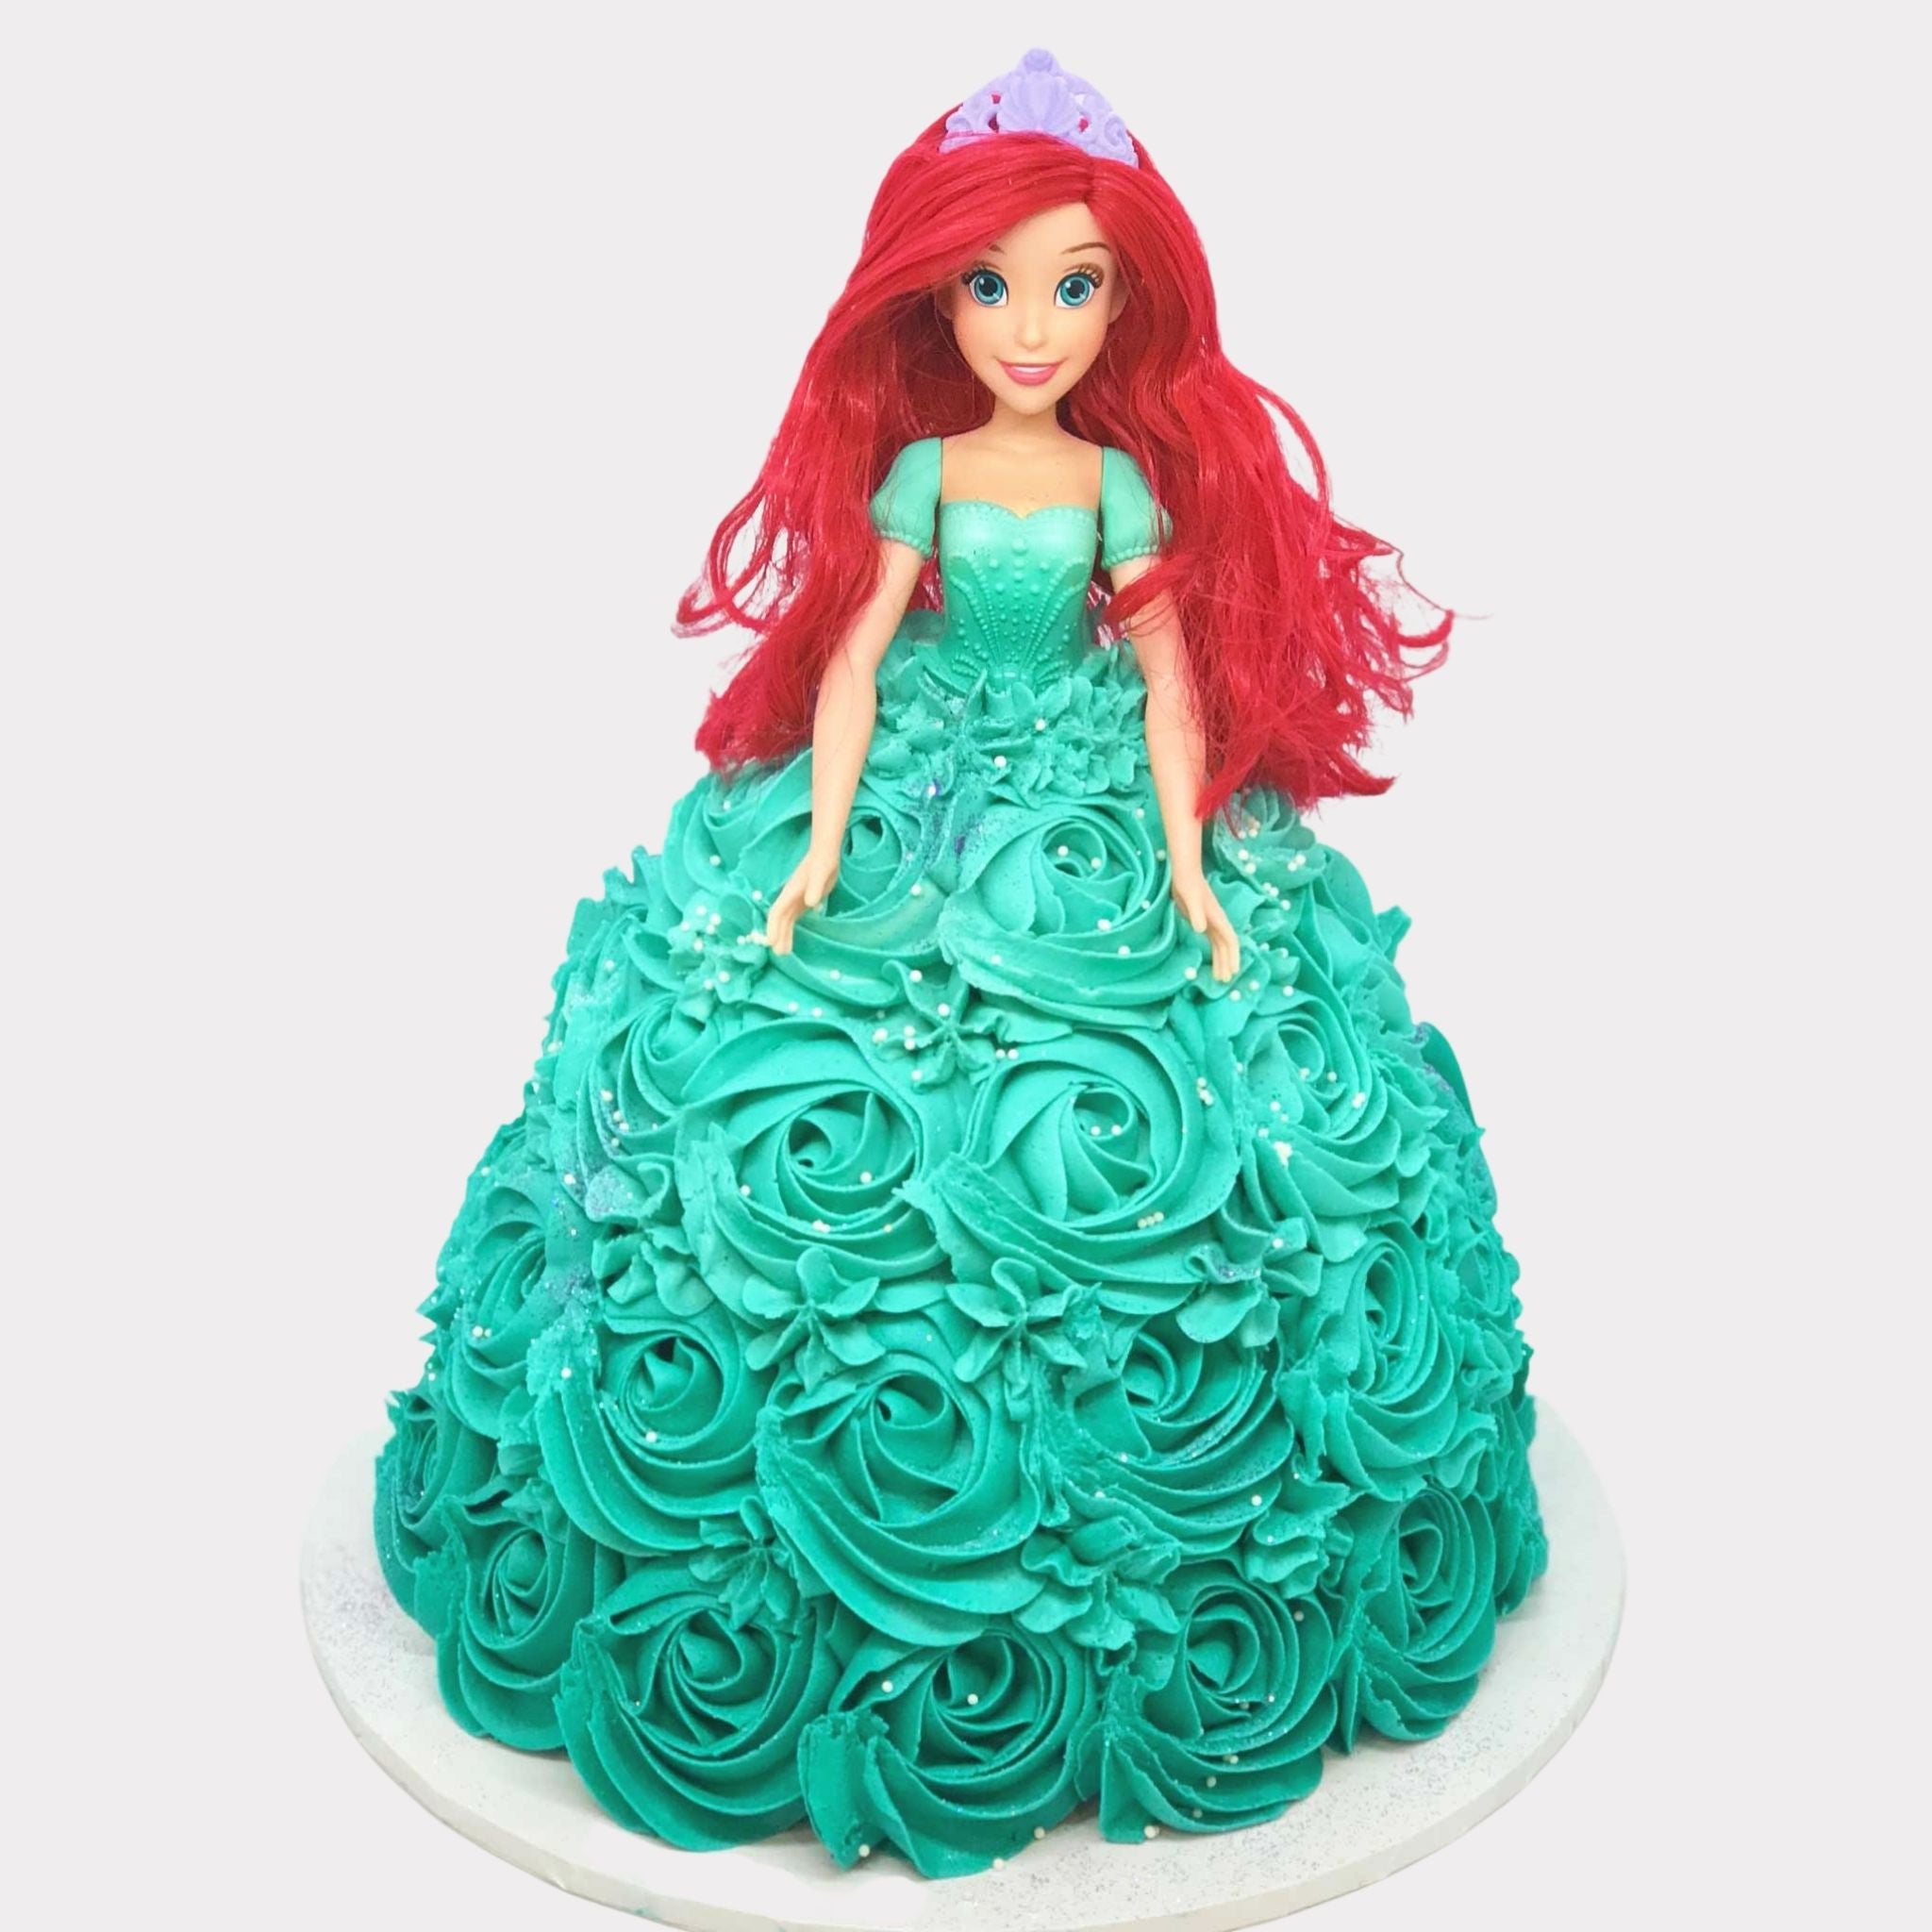 Princess Ariel Cake - CakeCentral.com